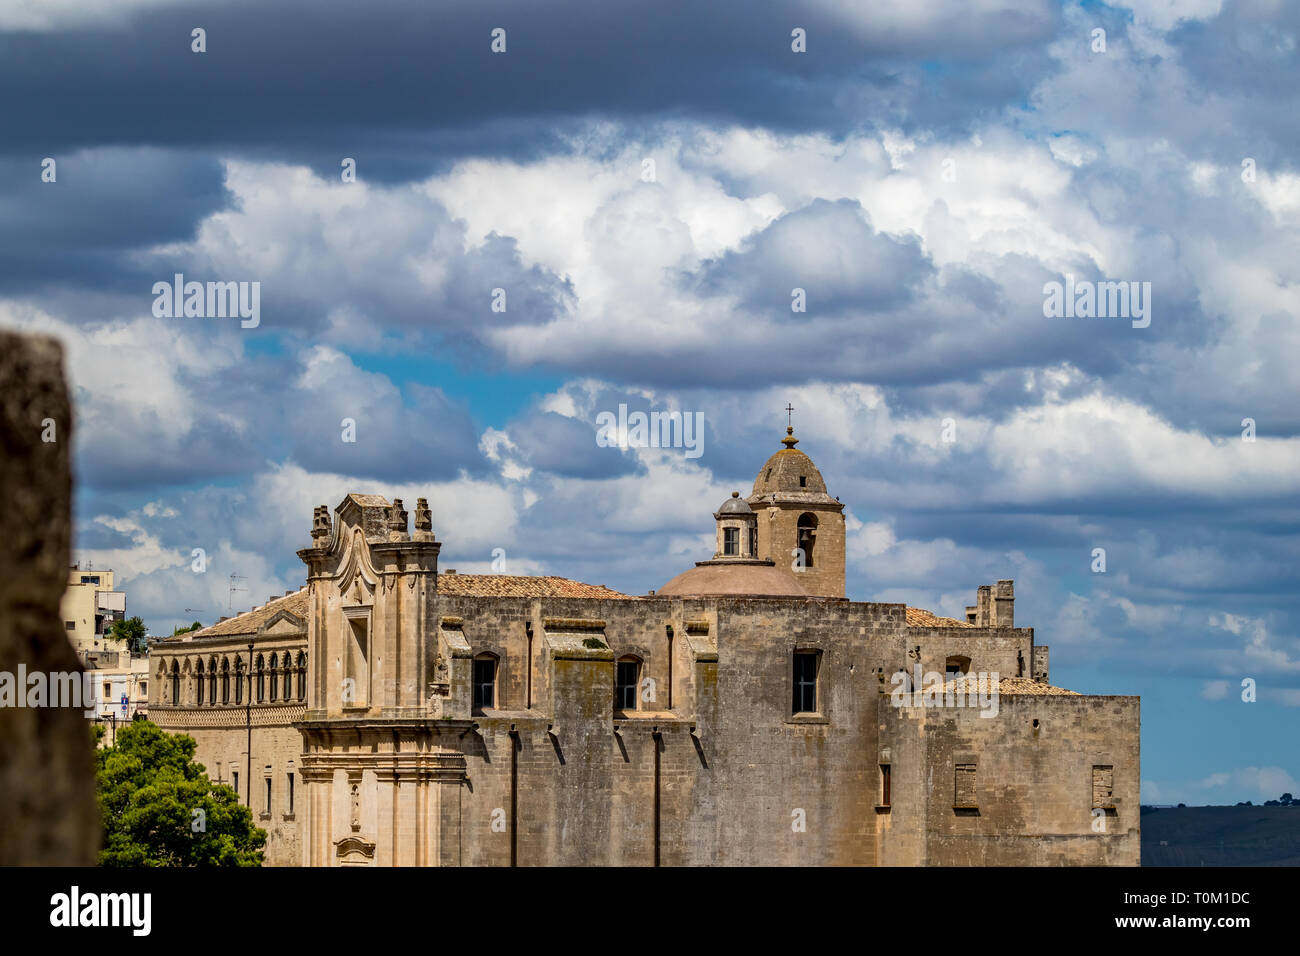 La torre de la iglesia y el techo con religioso cruz de Chiesa di Sant'Agostino, vista de la antigua ciudad de Matera, Basilicata, en el sur de Italia, nublado verano cálido Foto de stock